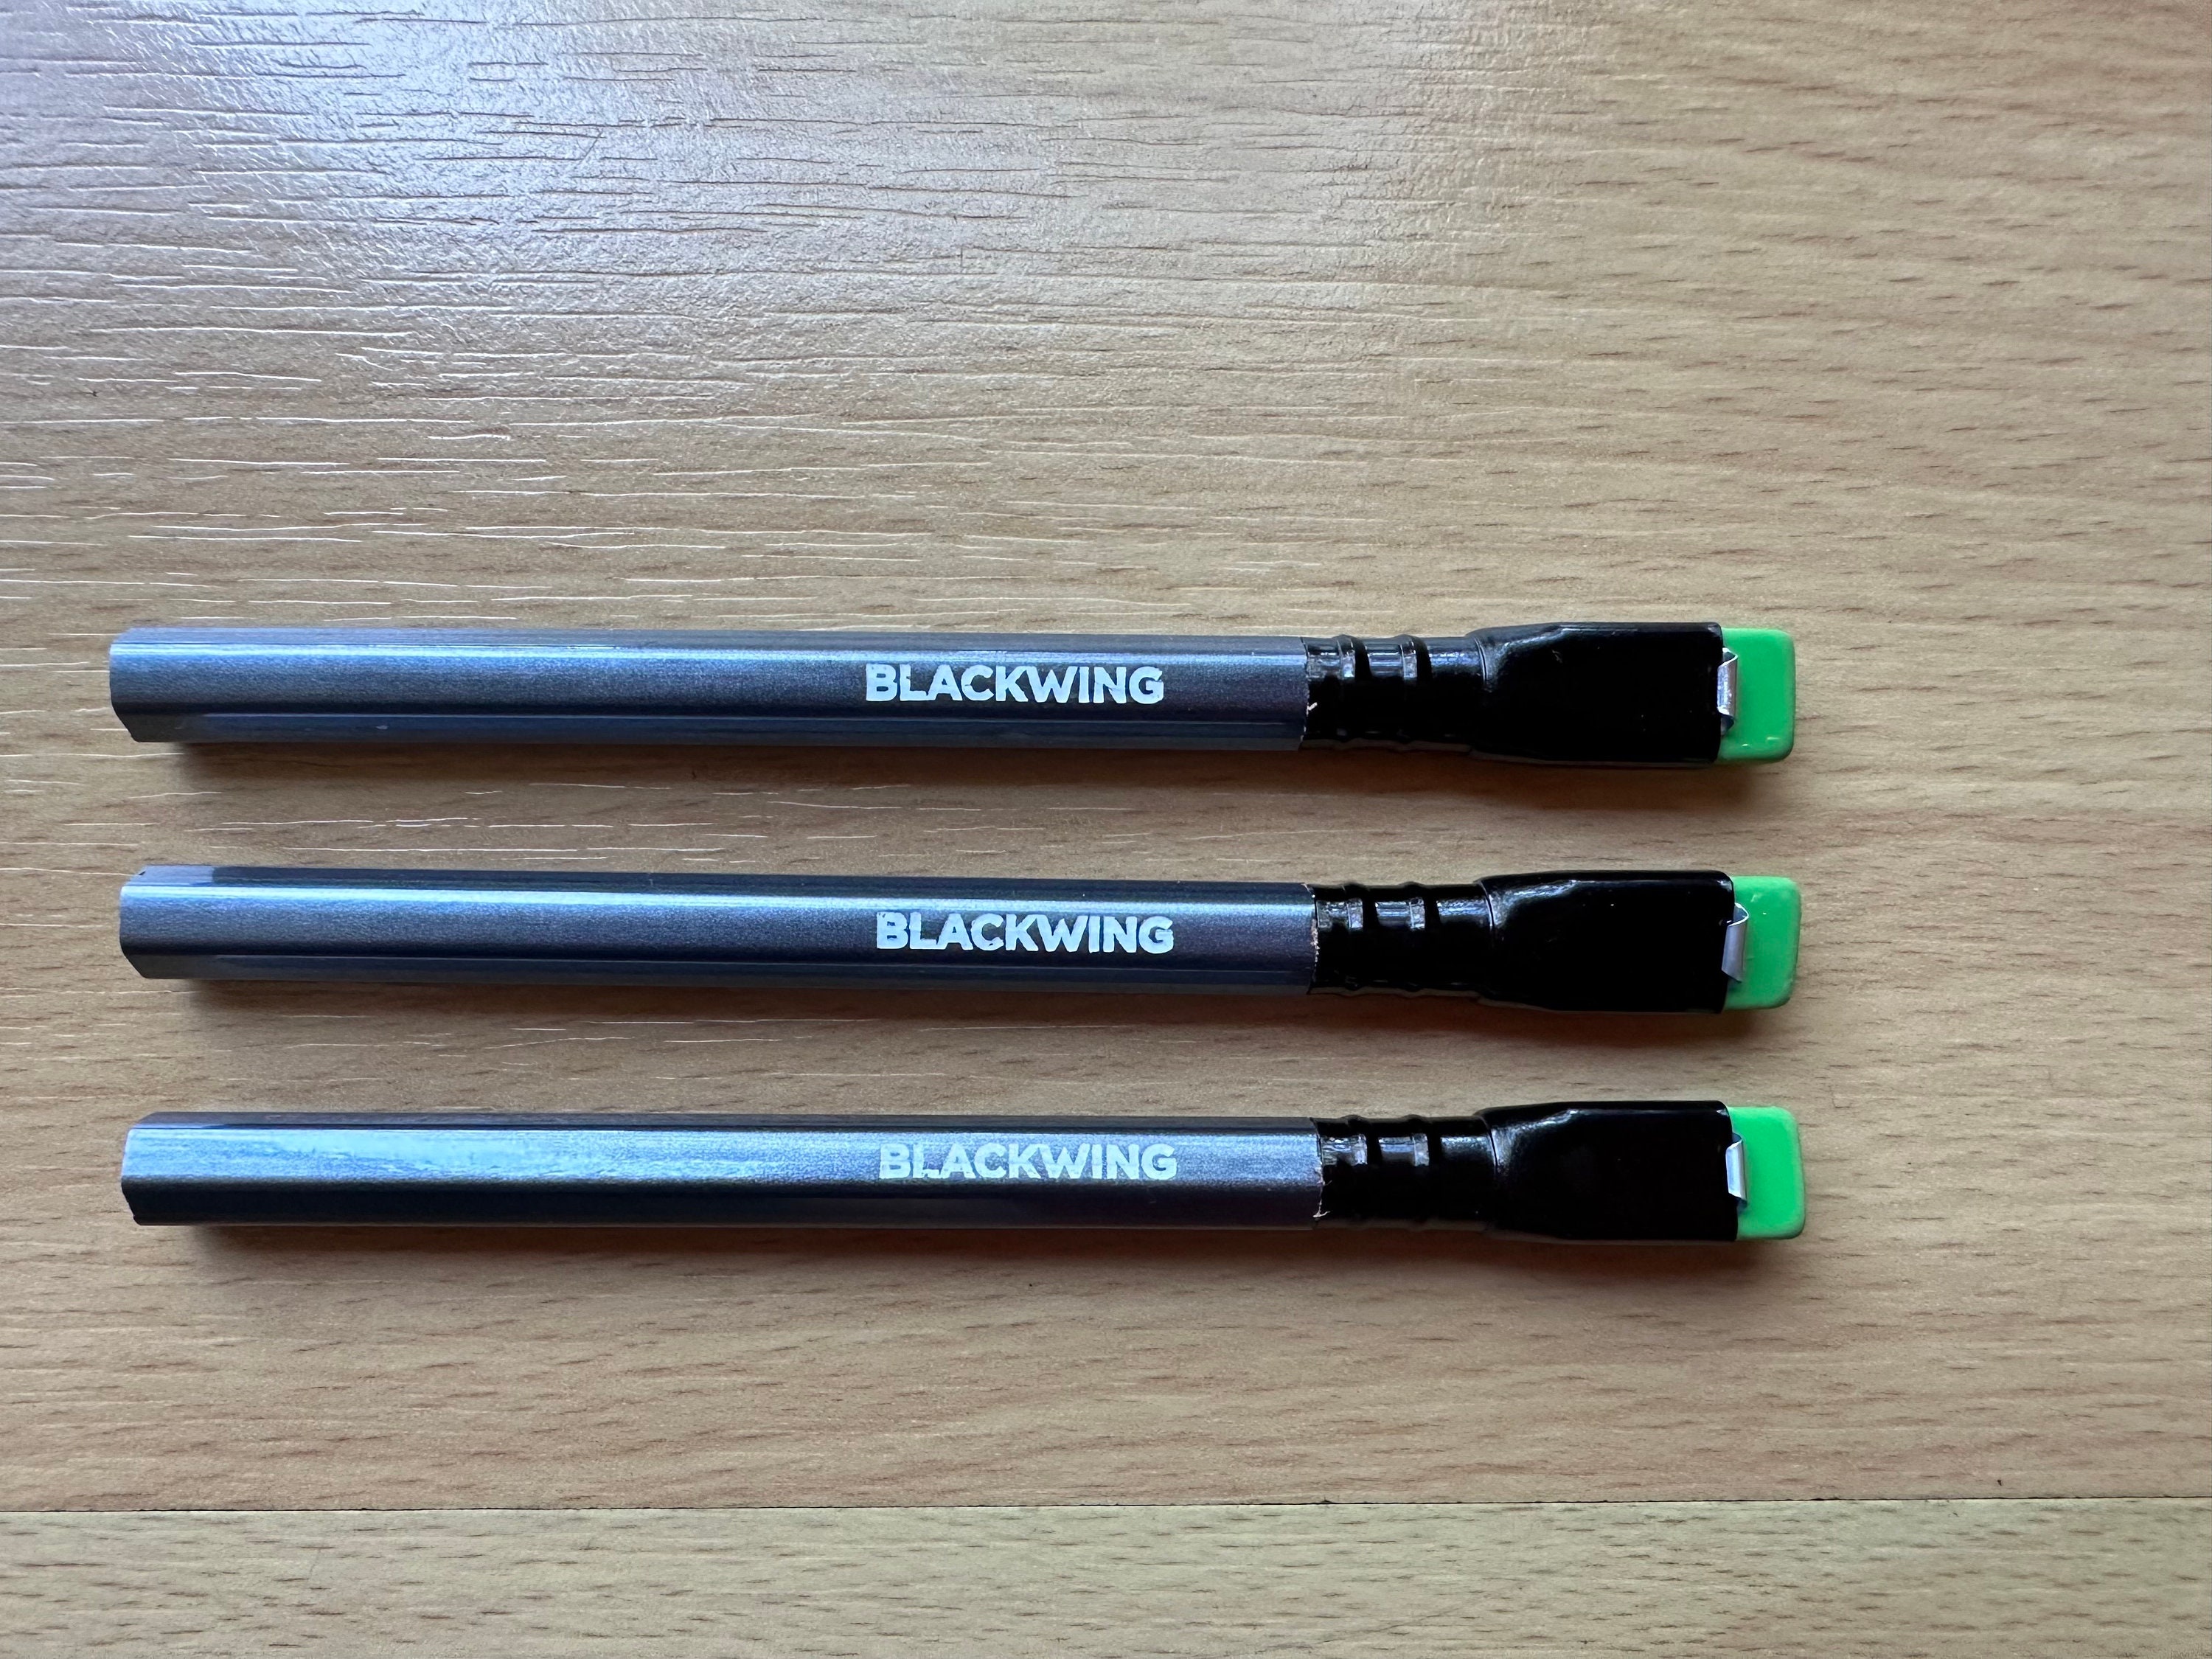 Blackwing Sampler Pack. 5 Pencils MMX, Pearl, 602, Natural, Volume